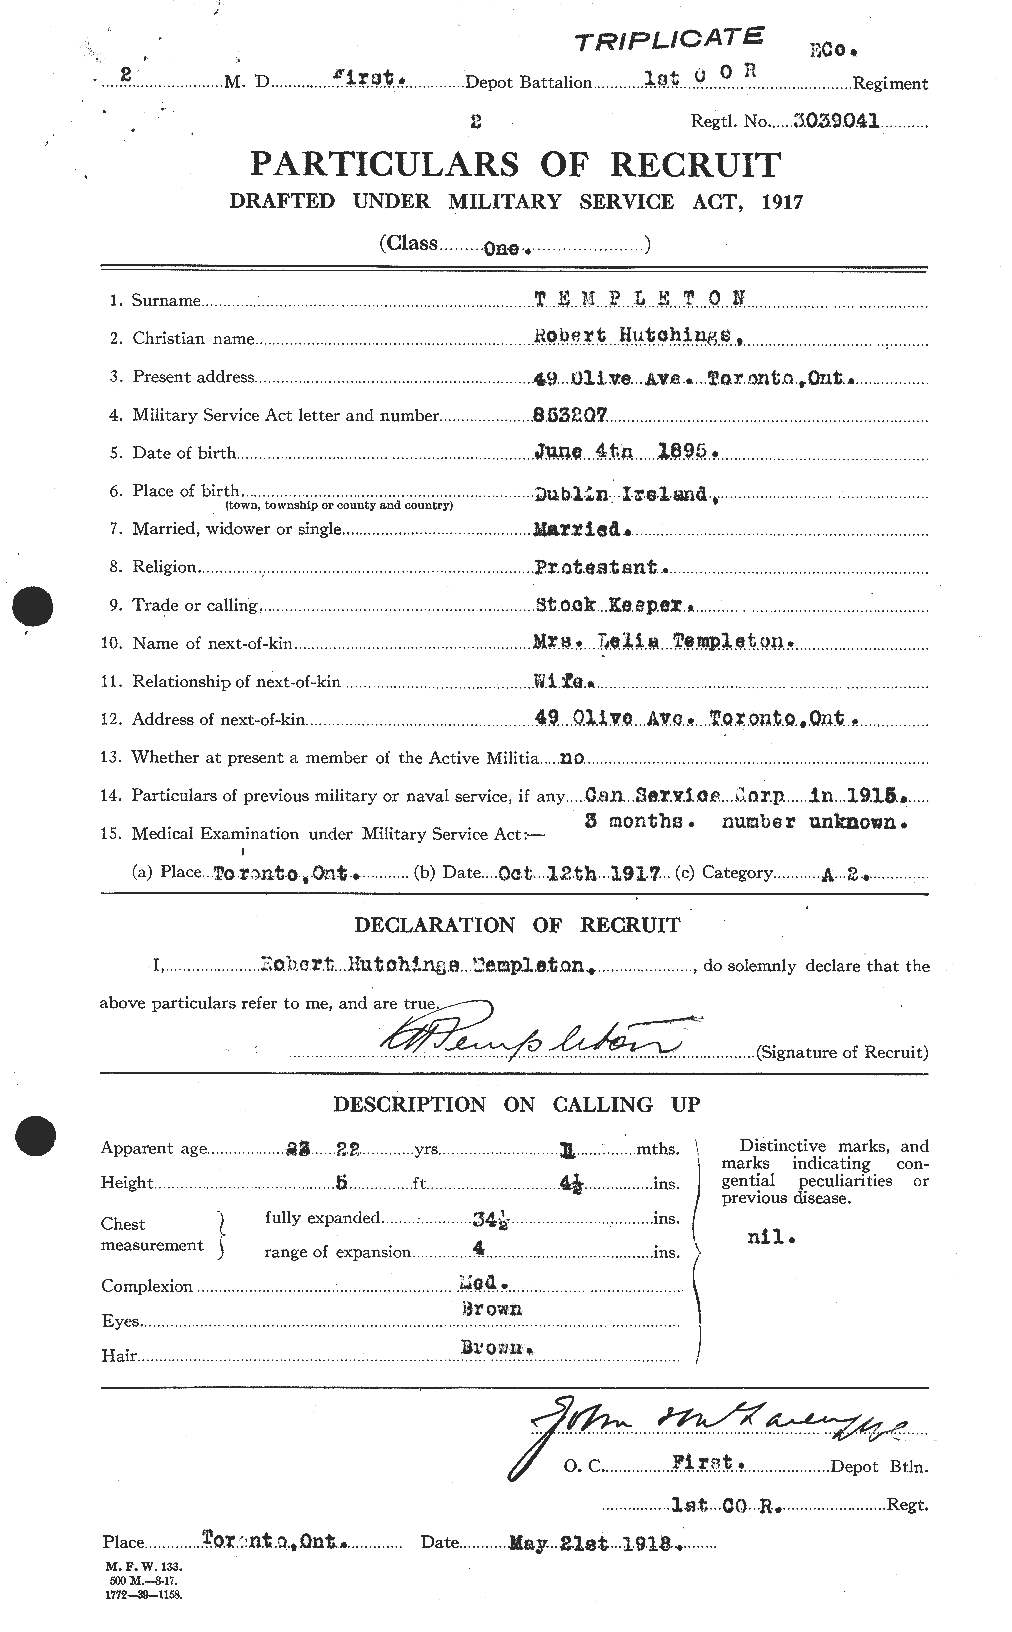 Dossiers du Personnel de la Première Guerre mondiale - CEC 629176a